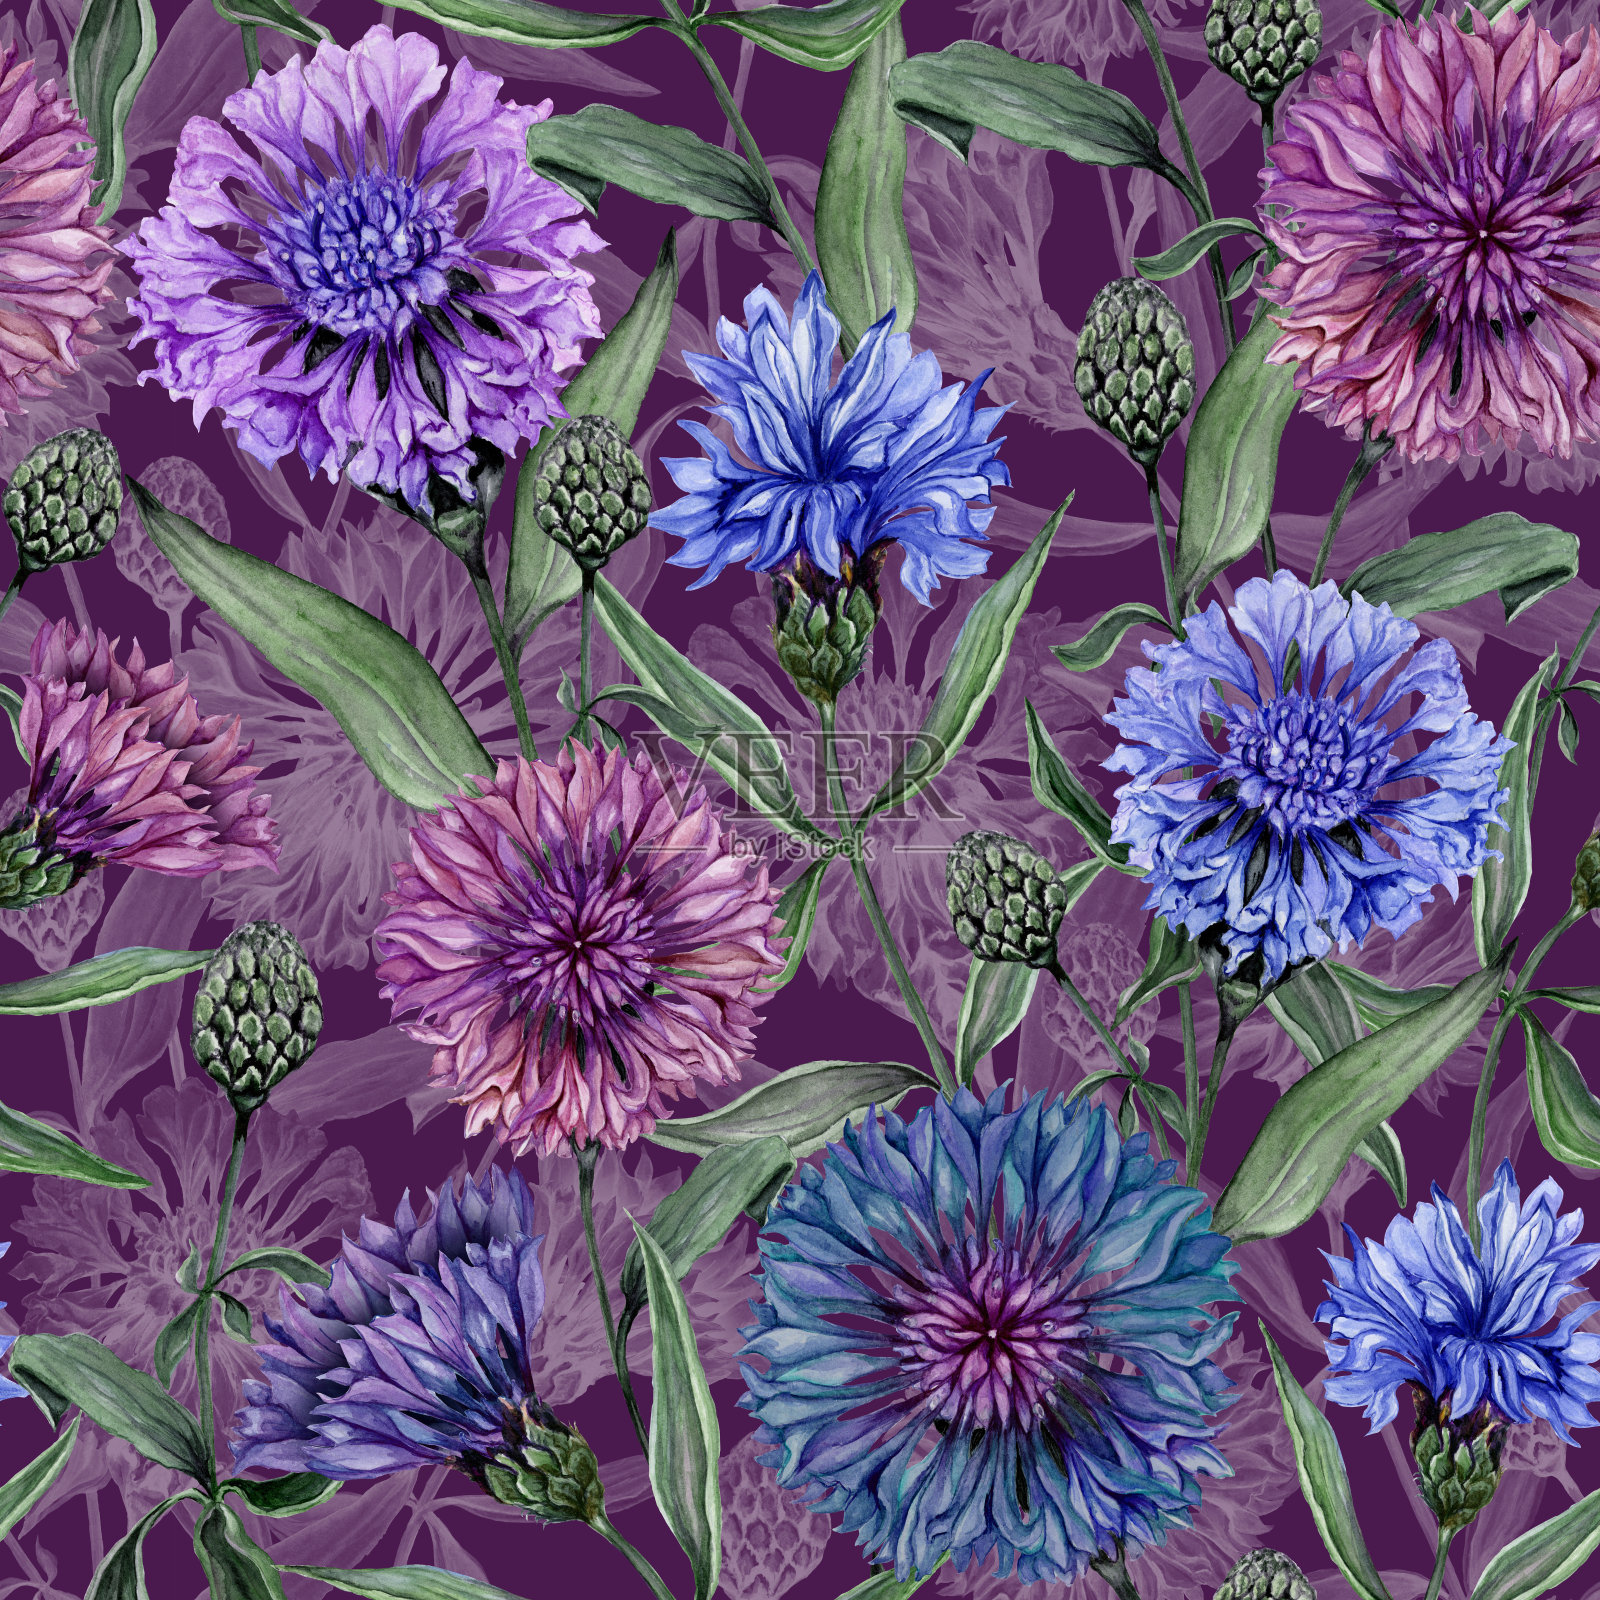 美丽的矢车菊花与绿色的叶子在紫色的背景。无缝的花卉图案。水彩画。手绘植物插画。插画图片素材